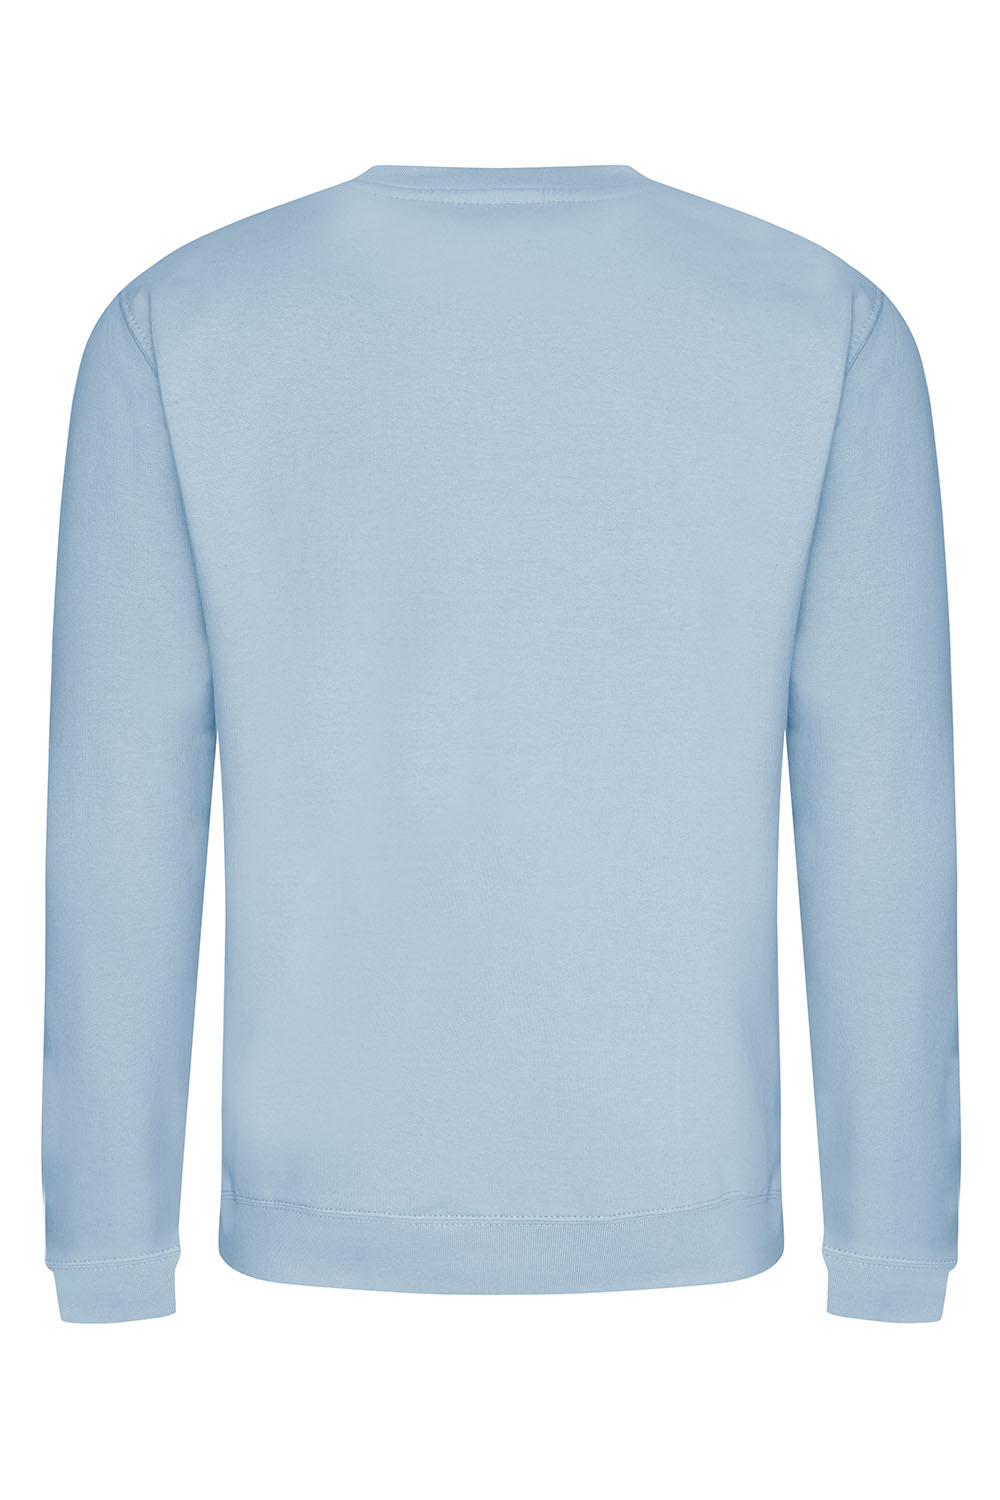 Happy Soul Sweatshirt In Sky Blue (Custom Pack)